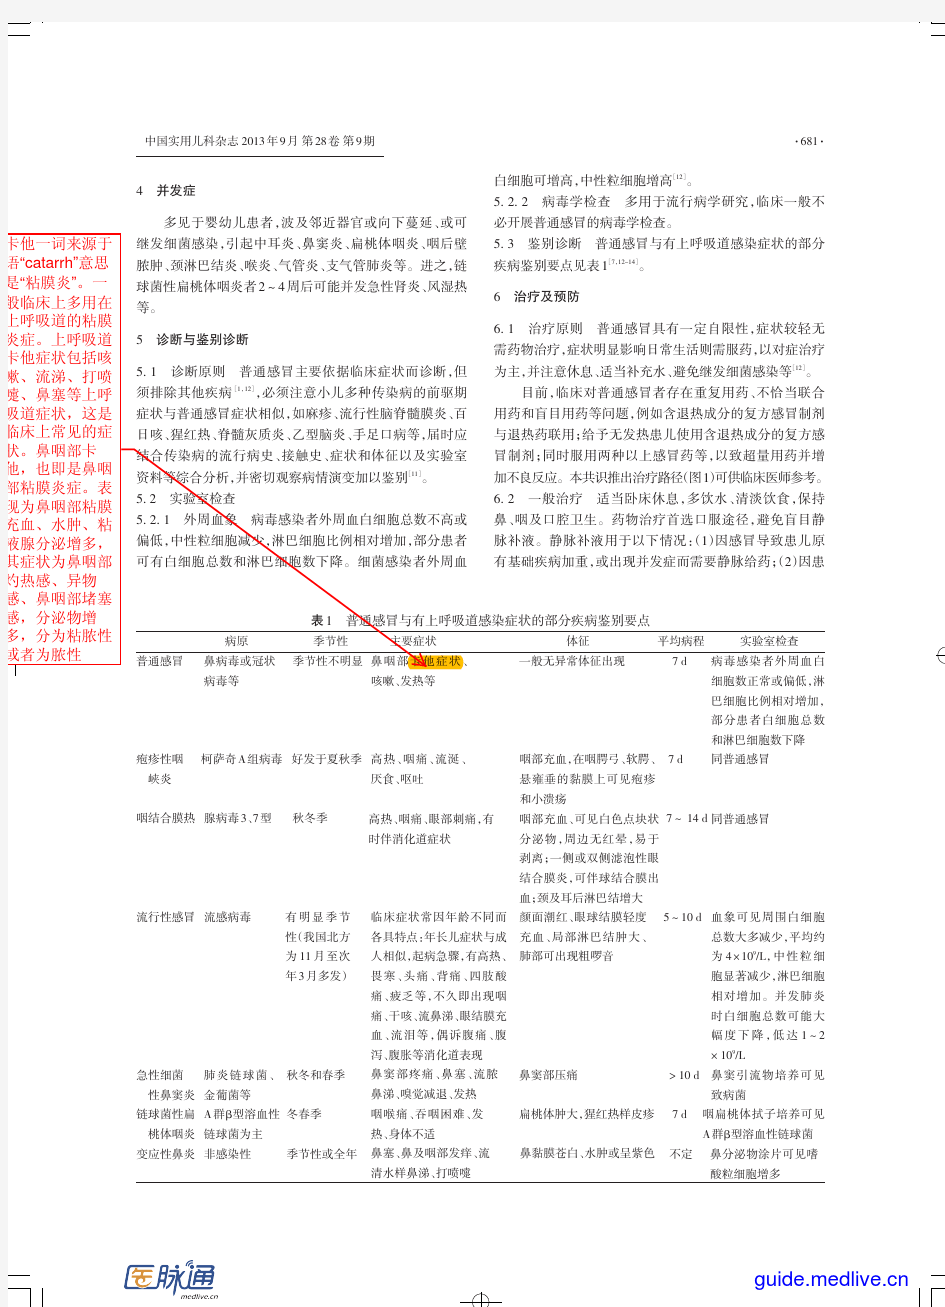 中国儿童普通感冒规范诊治专家共识(2013年)